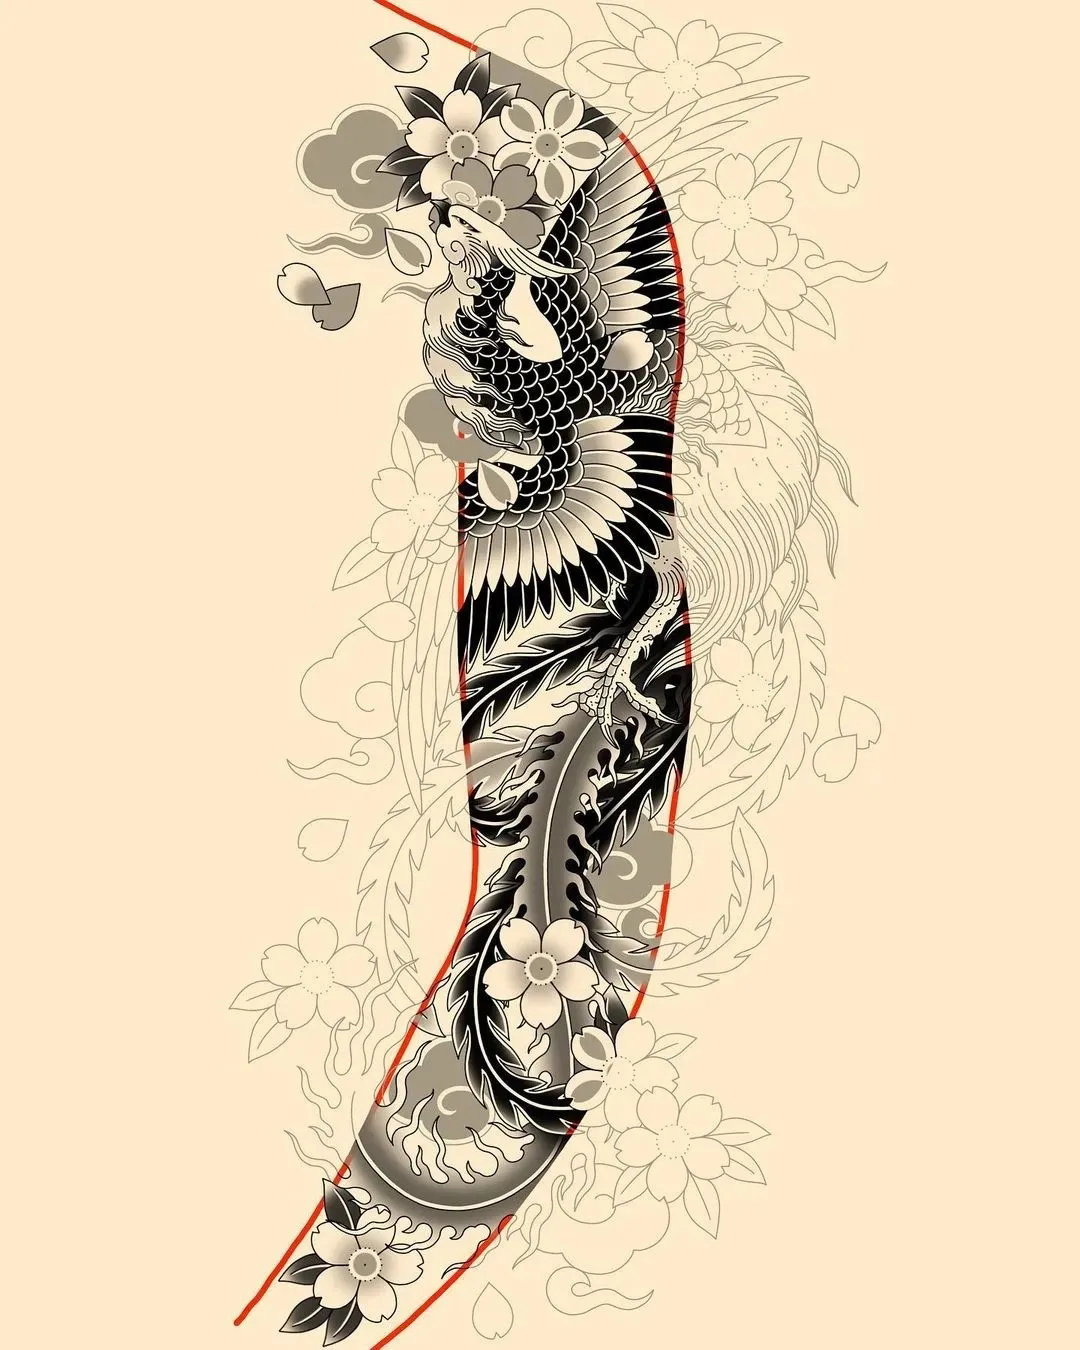 小腿鲤鱼纹身_上海纹身 上海纹身店 上海由龙纹身2号工作室